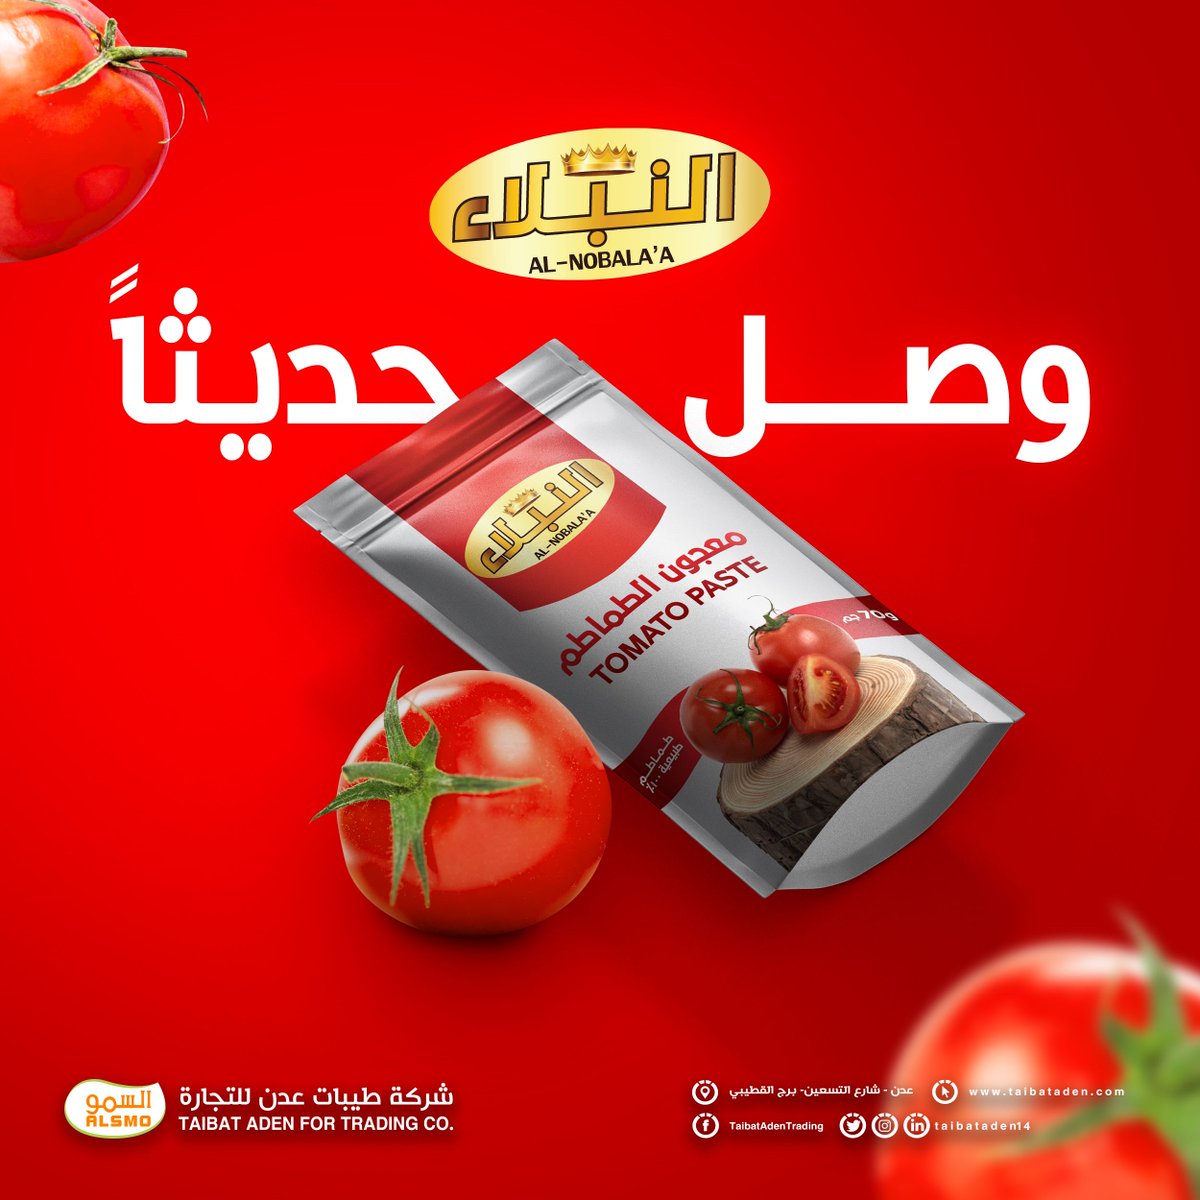 وصل حديثا 🥳
منتجنا الجديد 💯
معجون الطماطم النبلاء
بحجم 70 جرام
النبلاء .... أصل وولاء
#السمو_لأصحاب_السمو 👑
#جودة_عالي #بسعر_أقل 👌
#منتجاتنا_لها_الصدارة 👍
#طيبات_عدن_للتجارة_والإستيراد